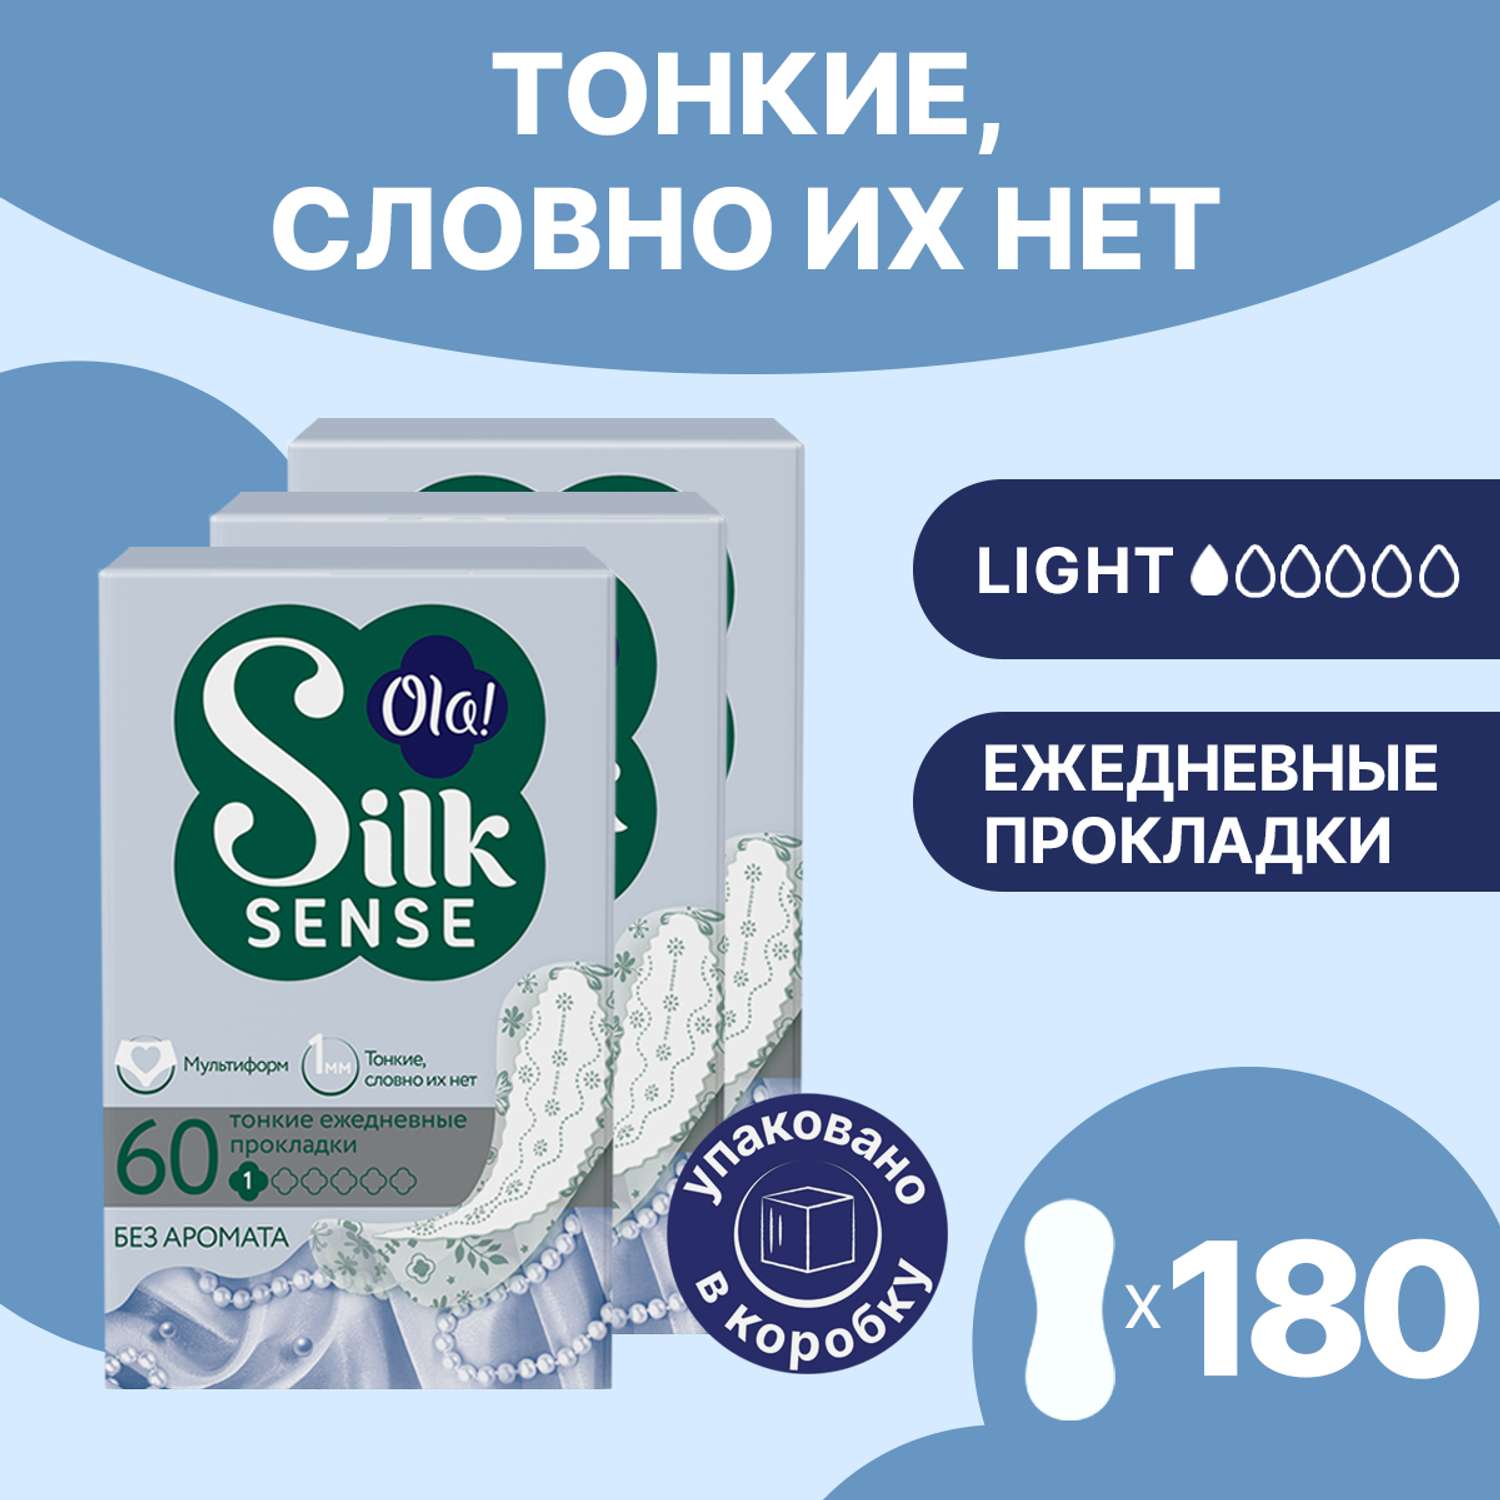 Ежедневные прокладки Ola! Silk Sense Light ежедневные тонкие стринг-мультиформ 60x3 уп.180 - фото 1